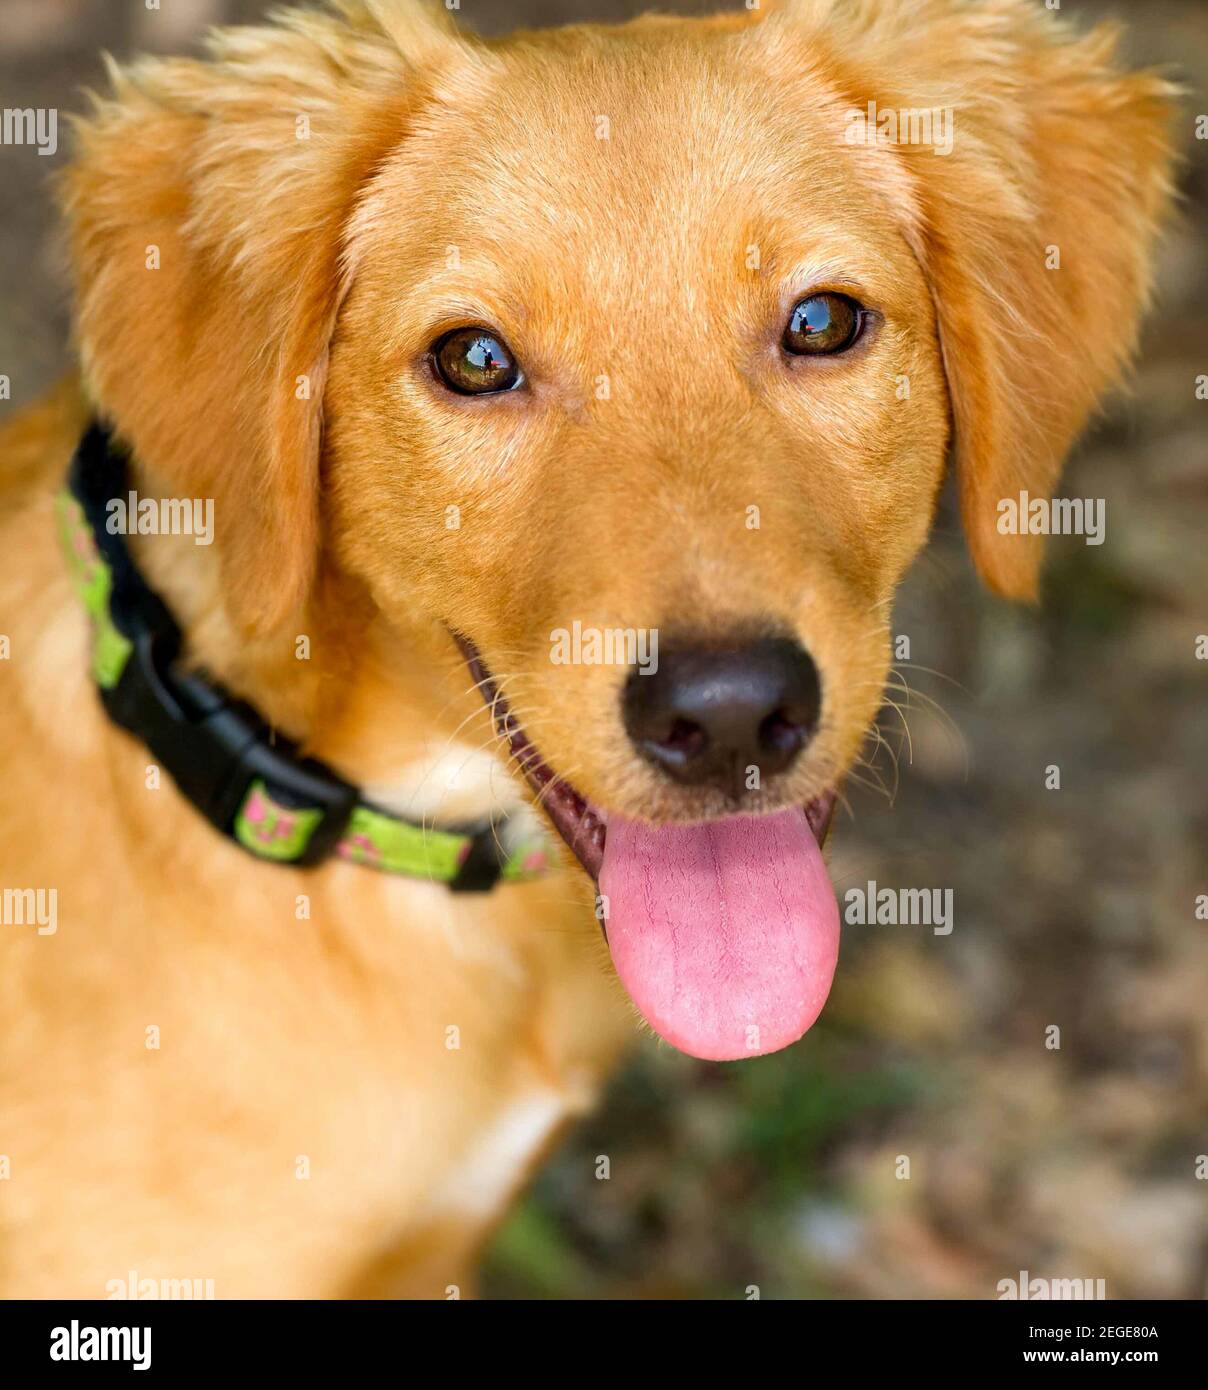 Hund glücklich ist eine Nahaufnahme von einem niedlichen entzückende Welpen Hund mit seiner Zunge hing aus seinem Mund und einen glücklichen Blick auf seinem Gesicht. Stockfoto